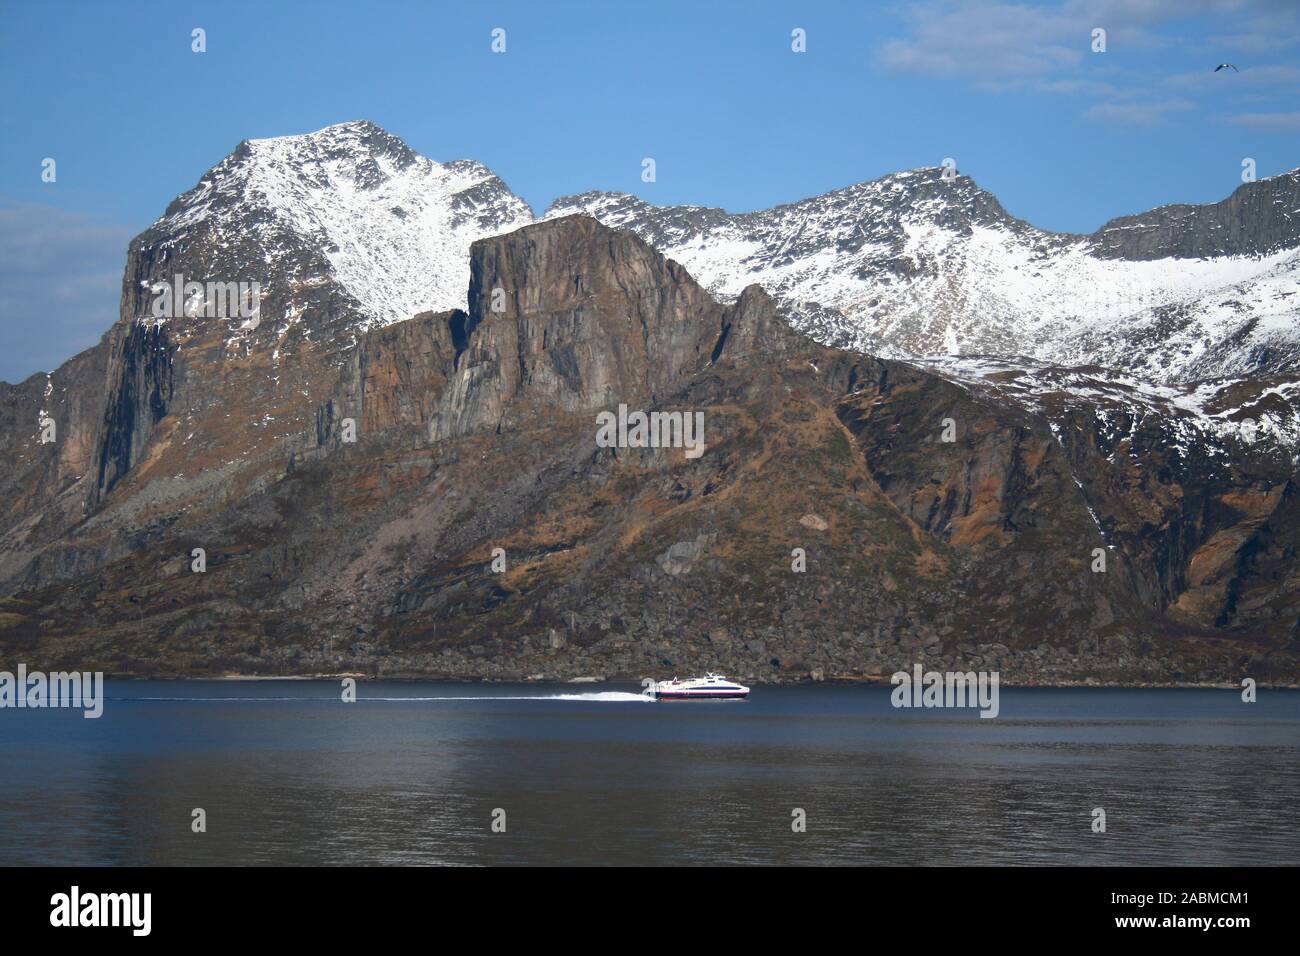 Immagini Stock - Elmo Vichingo Sulla Riva Del Fiordo In Norvegia. Turismo E  Concetto Di Viaggio. Image 145256905